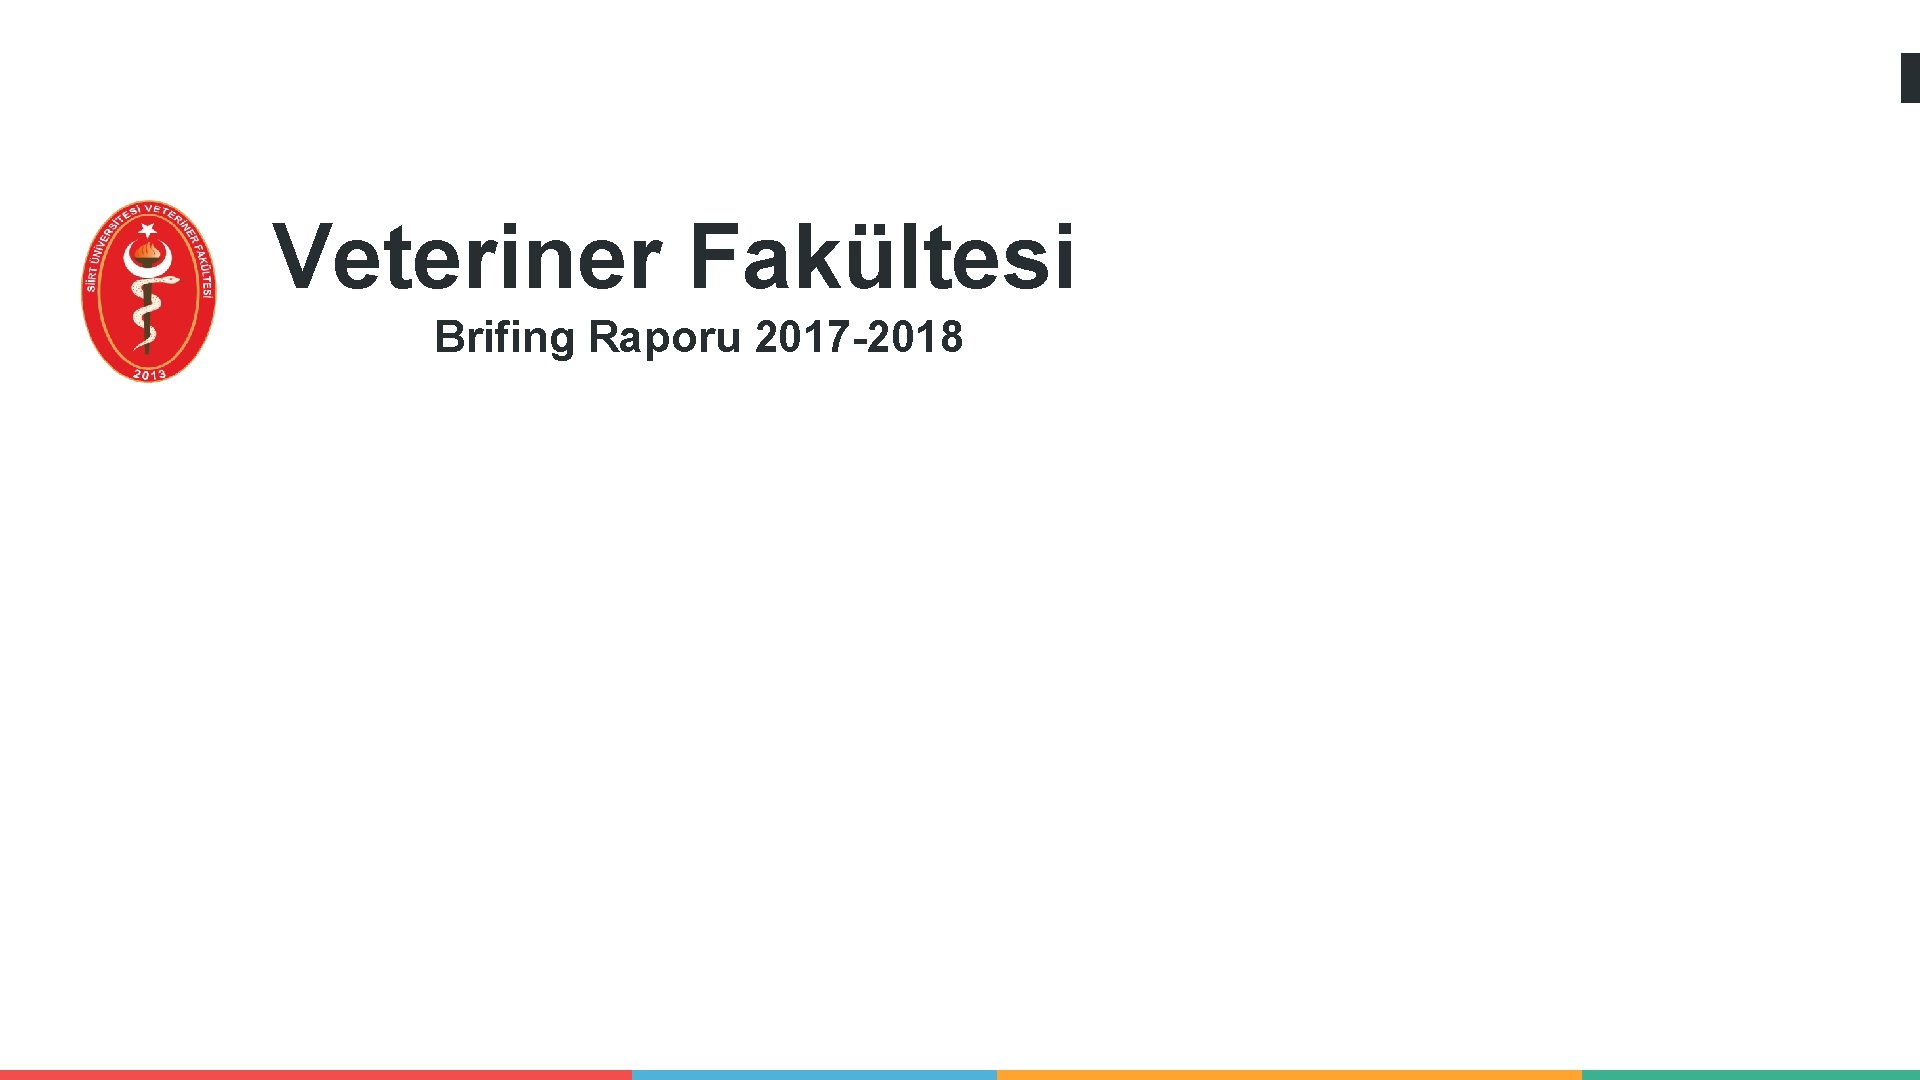 Veteriner Fakültesi Brifing Raporu 2017 -2018 